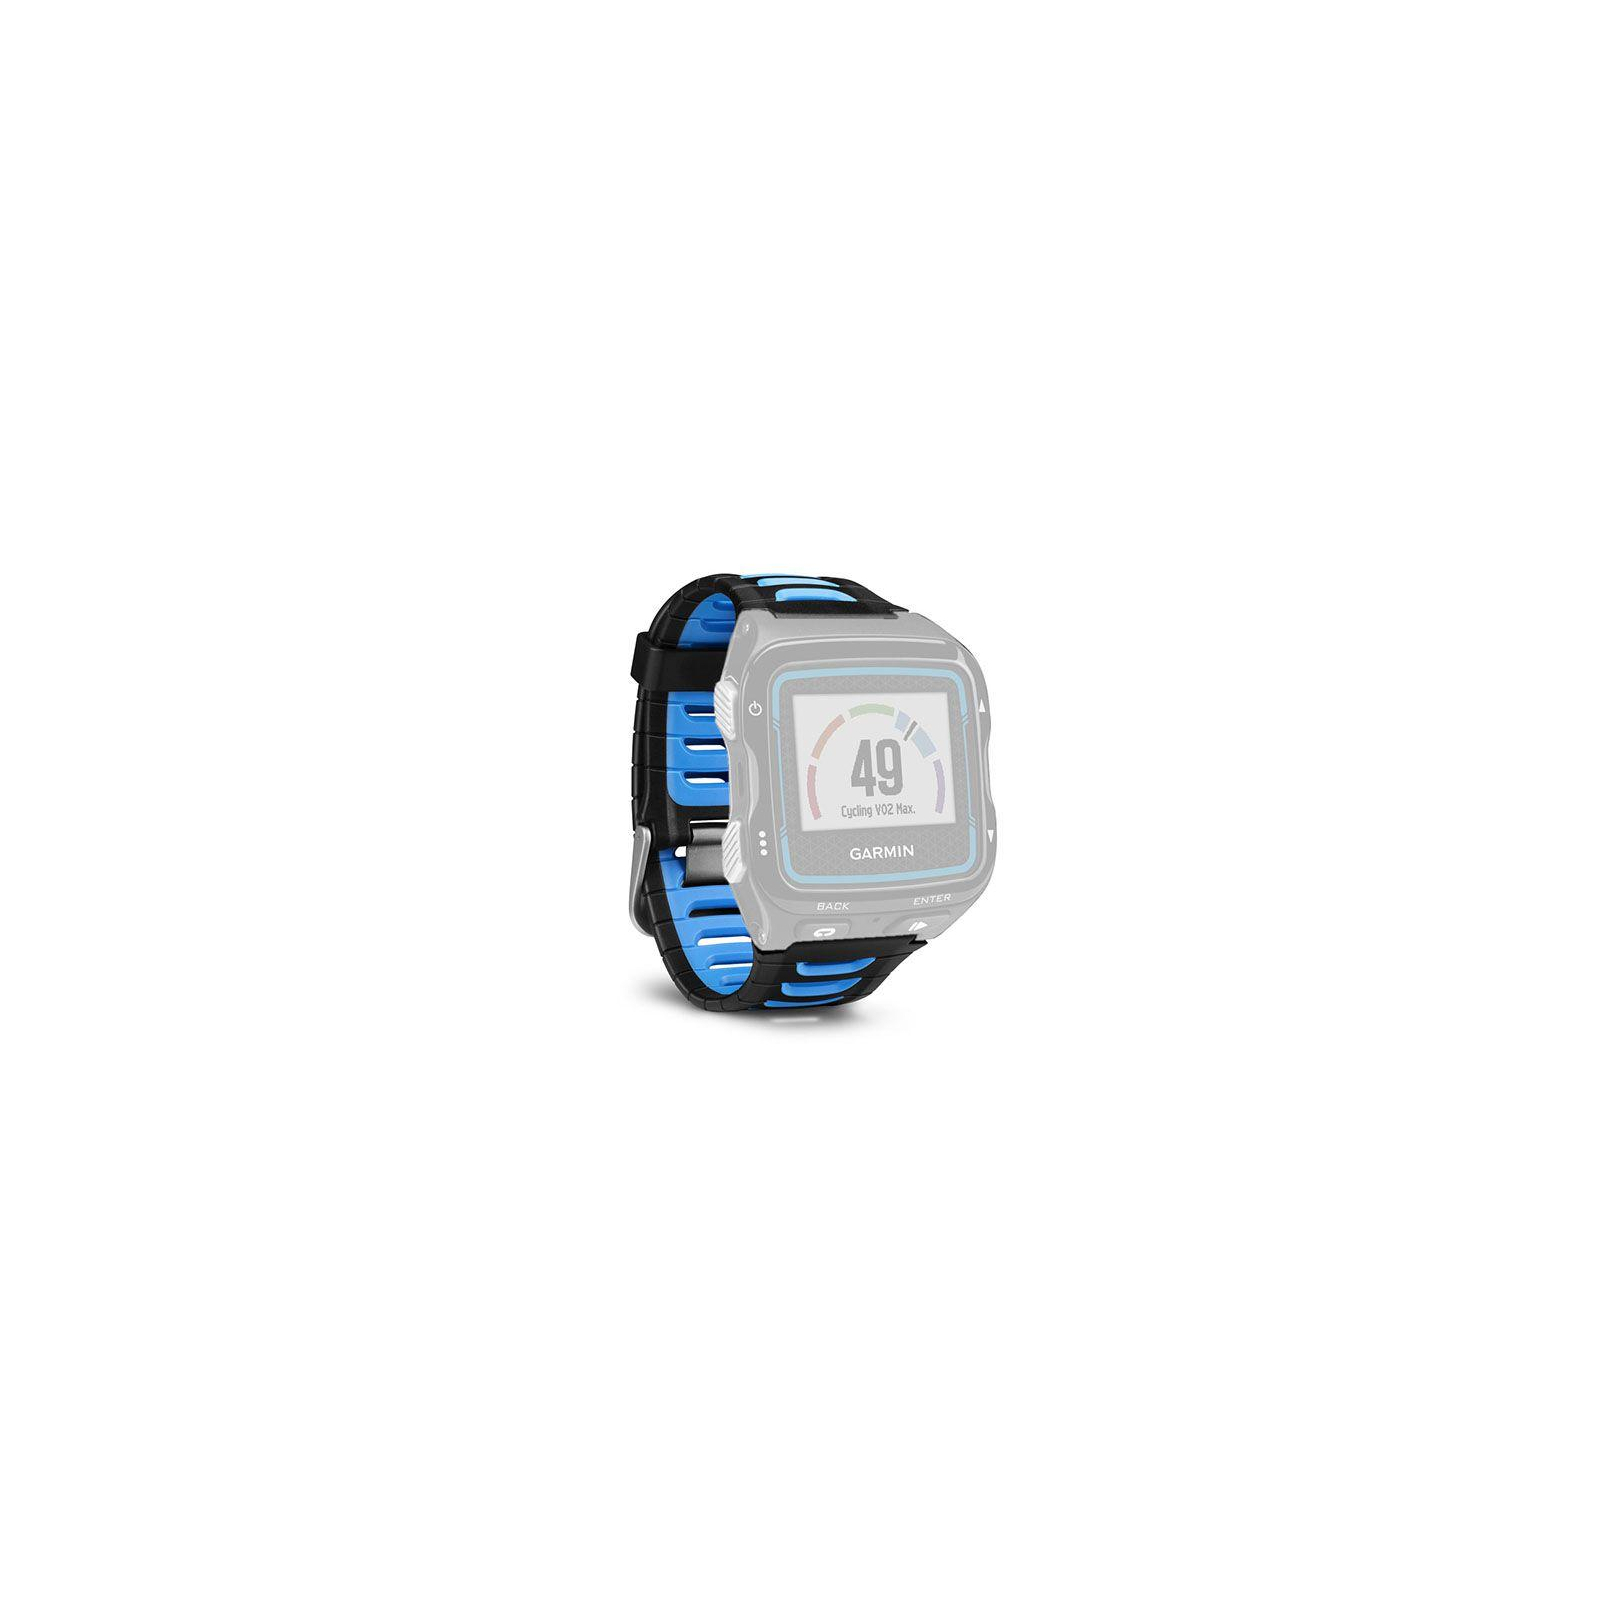 Ремінець до смарт-годинника Garmin Replacement Band, Forerunner 920XT, Blk/Blue (010-11251-41) зображення 3